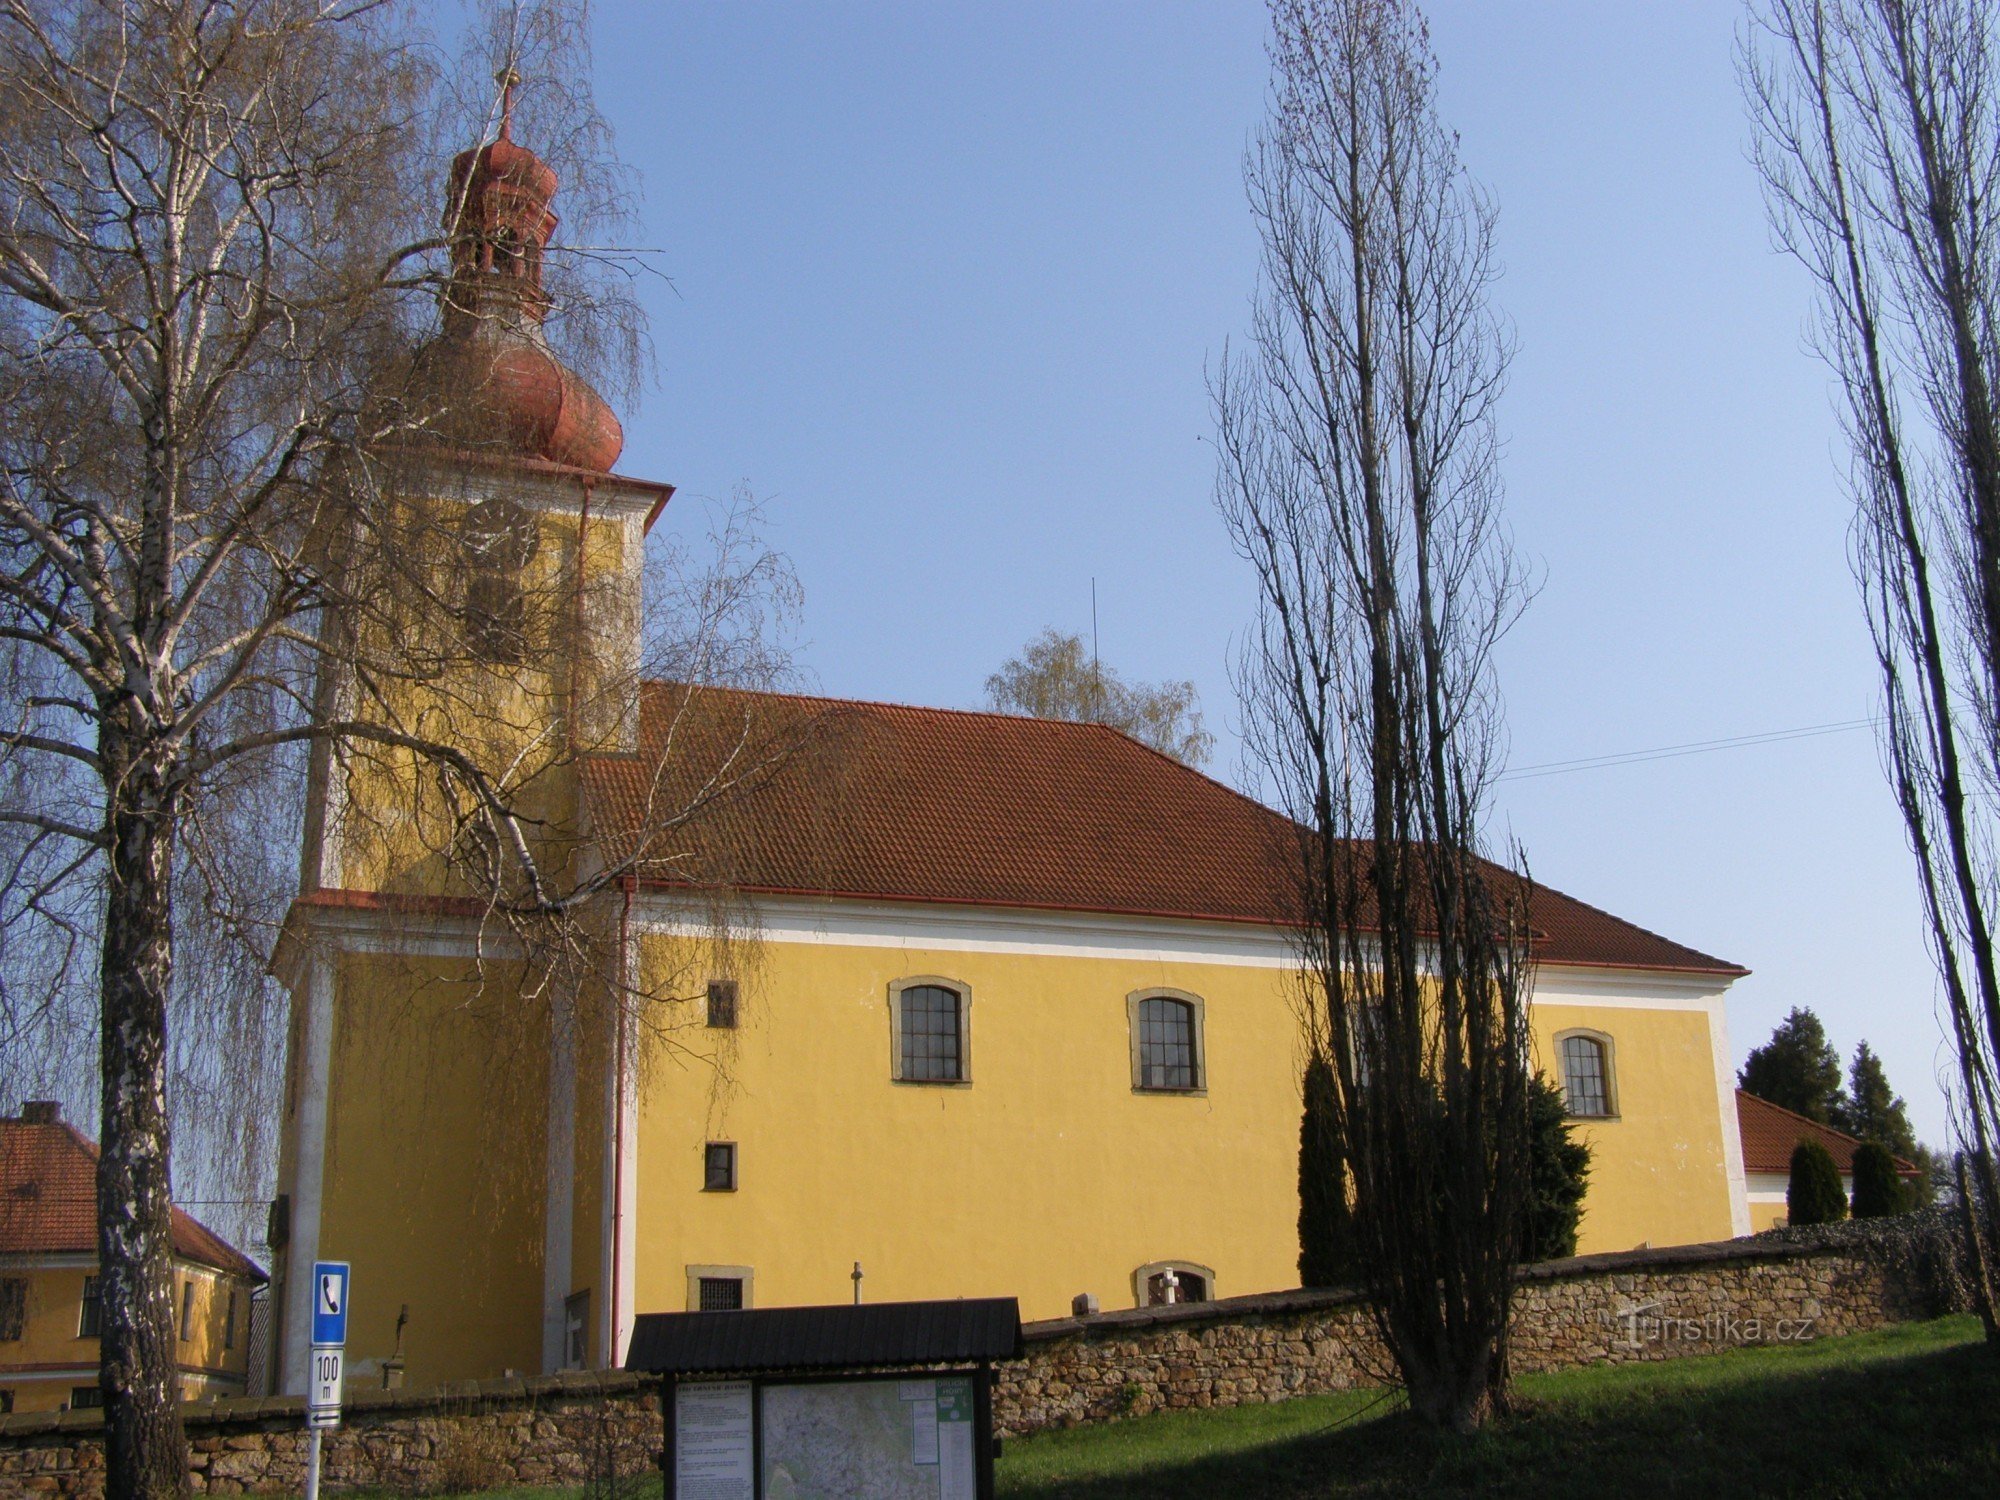 Rybná nad Zdobnicí - kirken St. Jakub